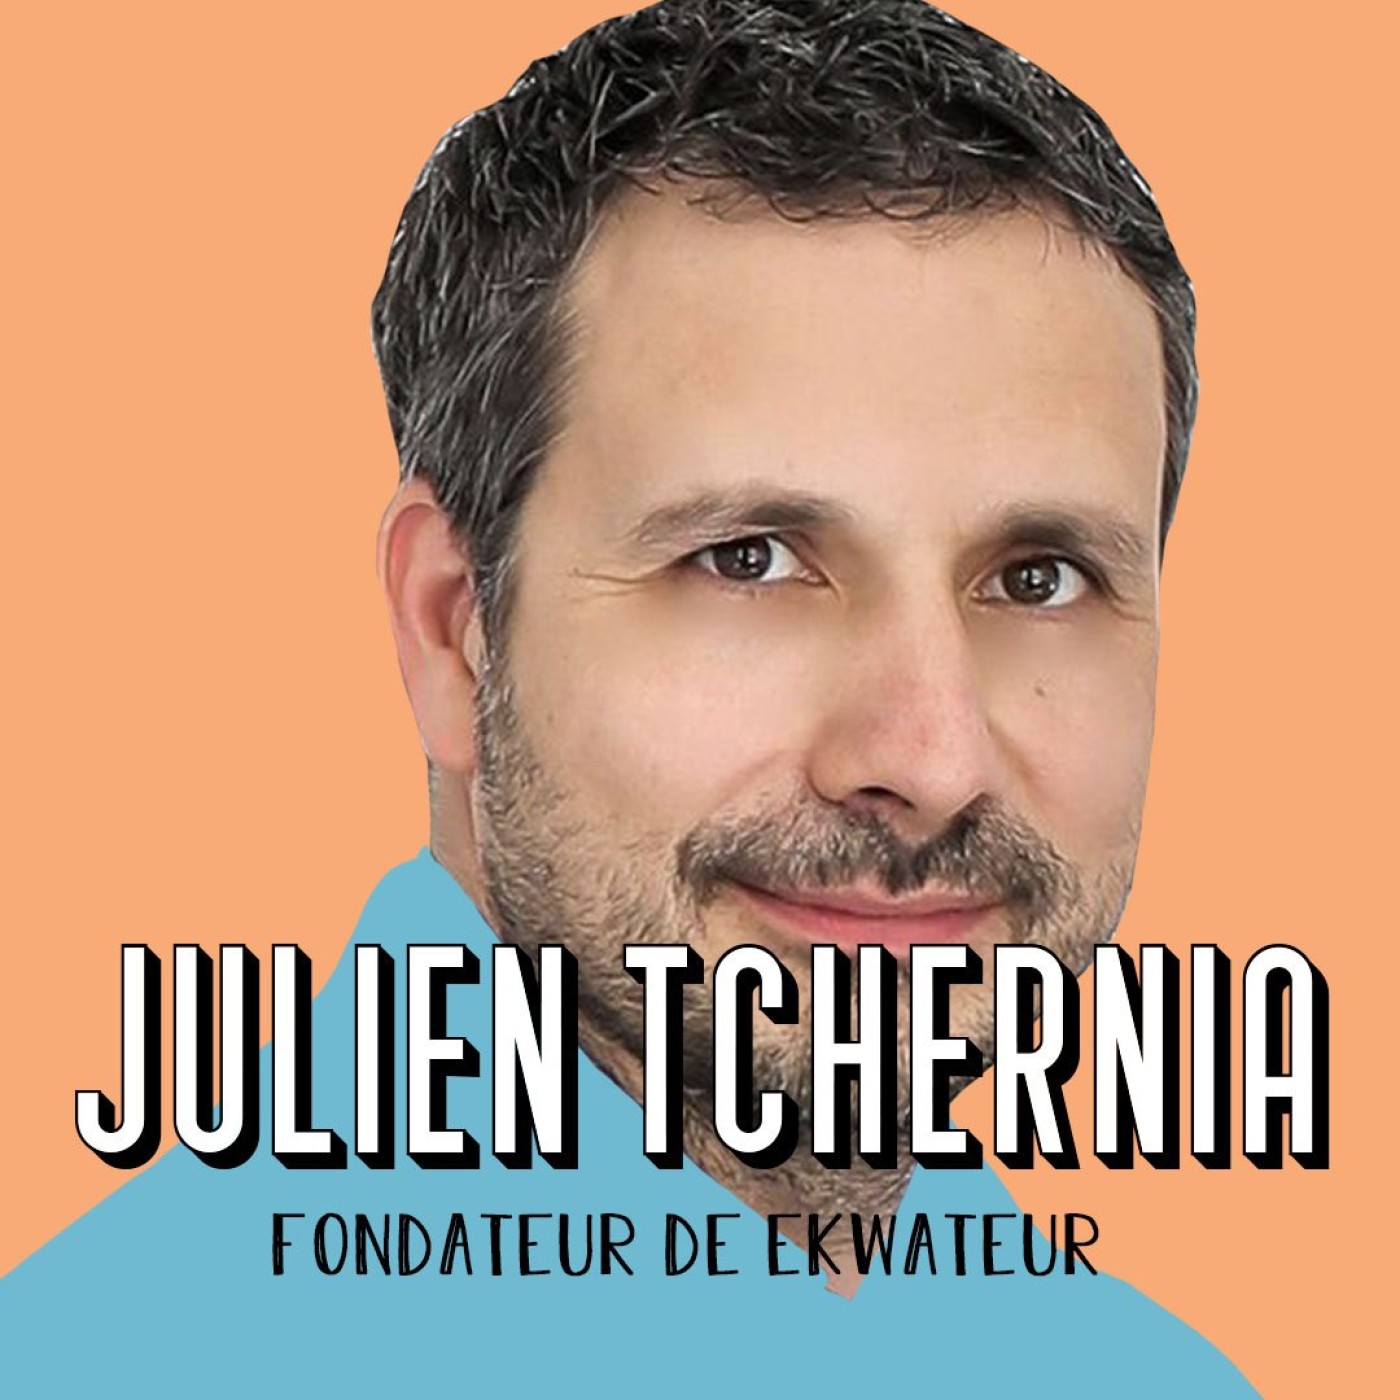 Julien Tchernia, fondateur d'EkWateur - Le plus gros risque, c'est de ne pas en prendre